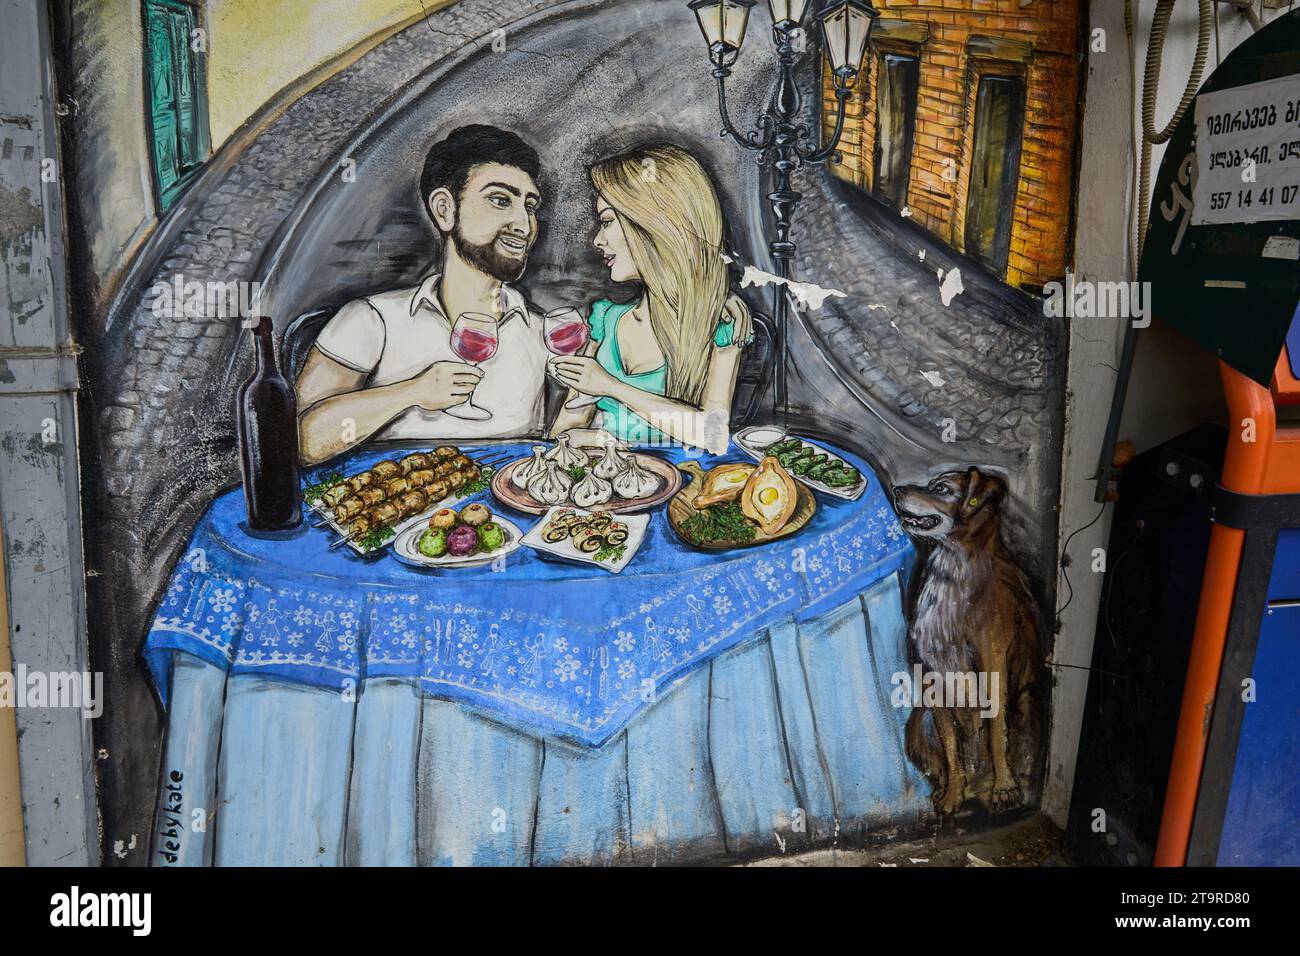 Grafitto, Junges Paar beim Essen, typische georgische Speisen, Bankomat, Stadtteil Awlabari, armenisches Viertel, Avlabari, Tiflis, Georgien Stockfoto